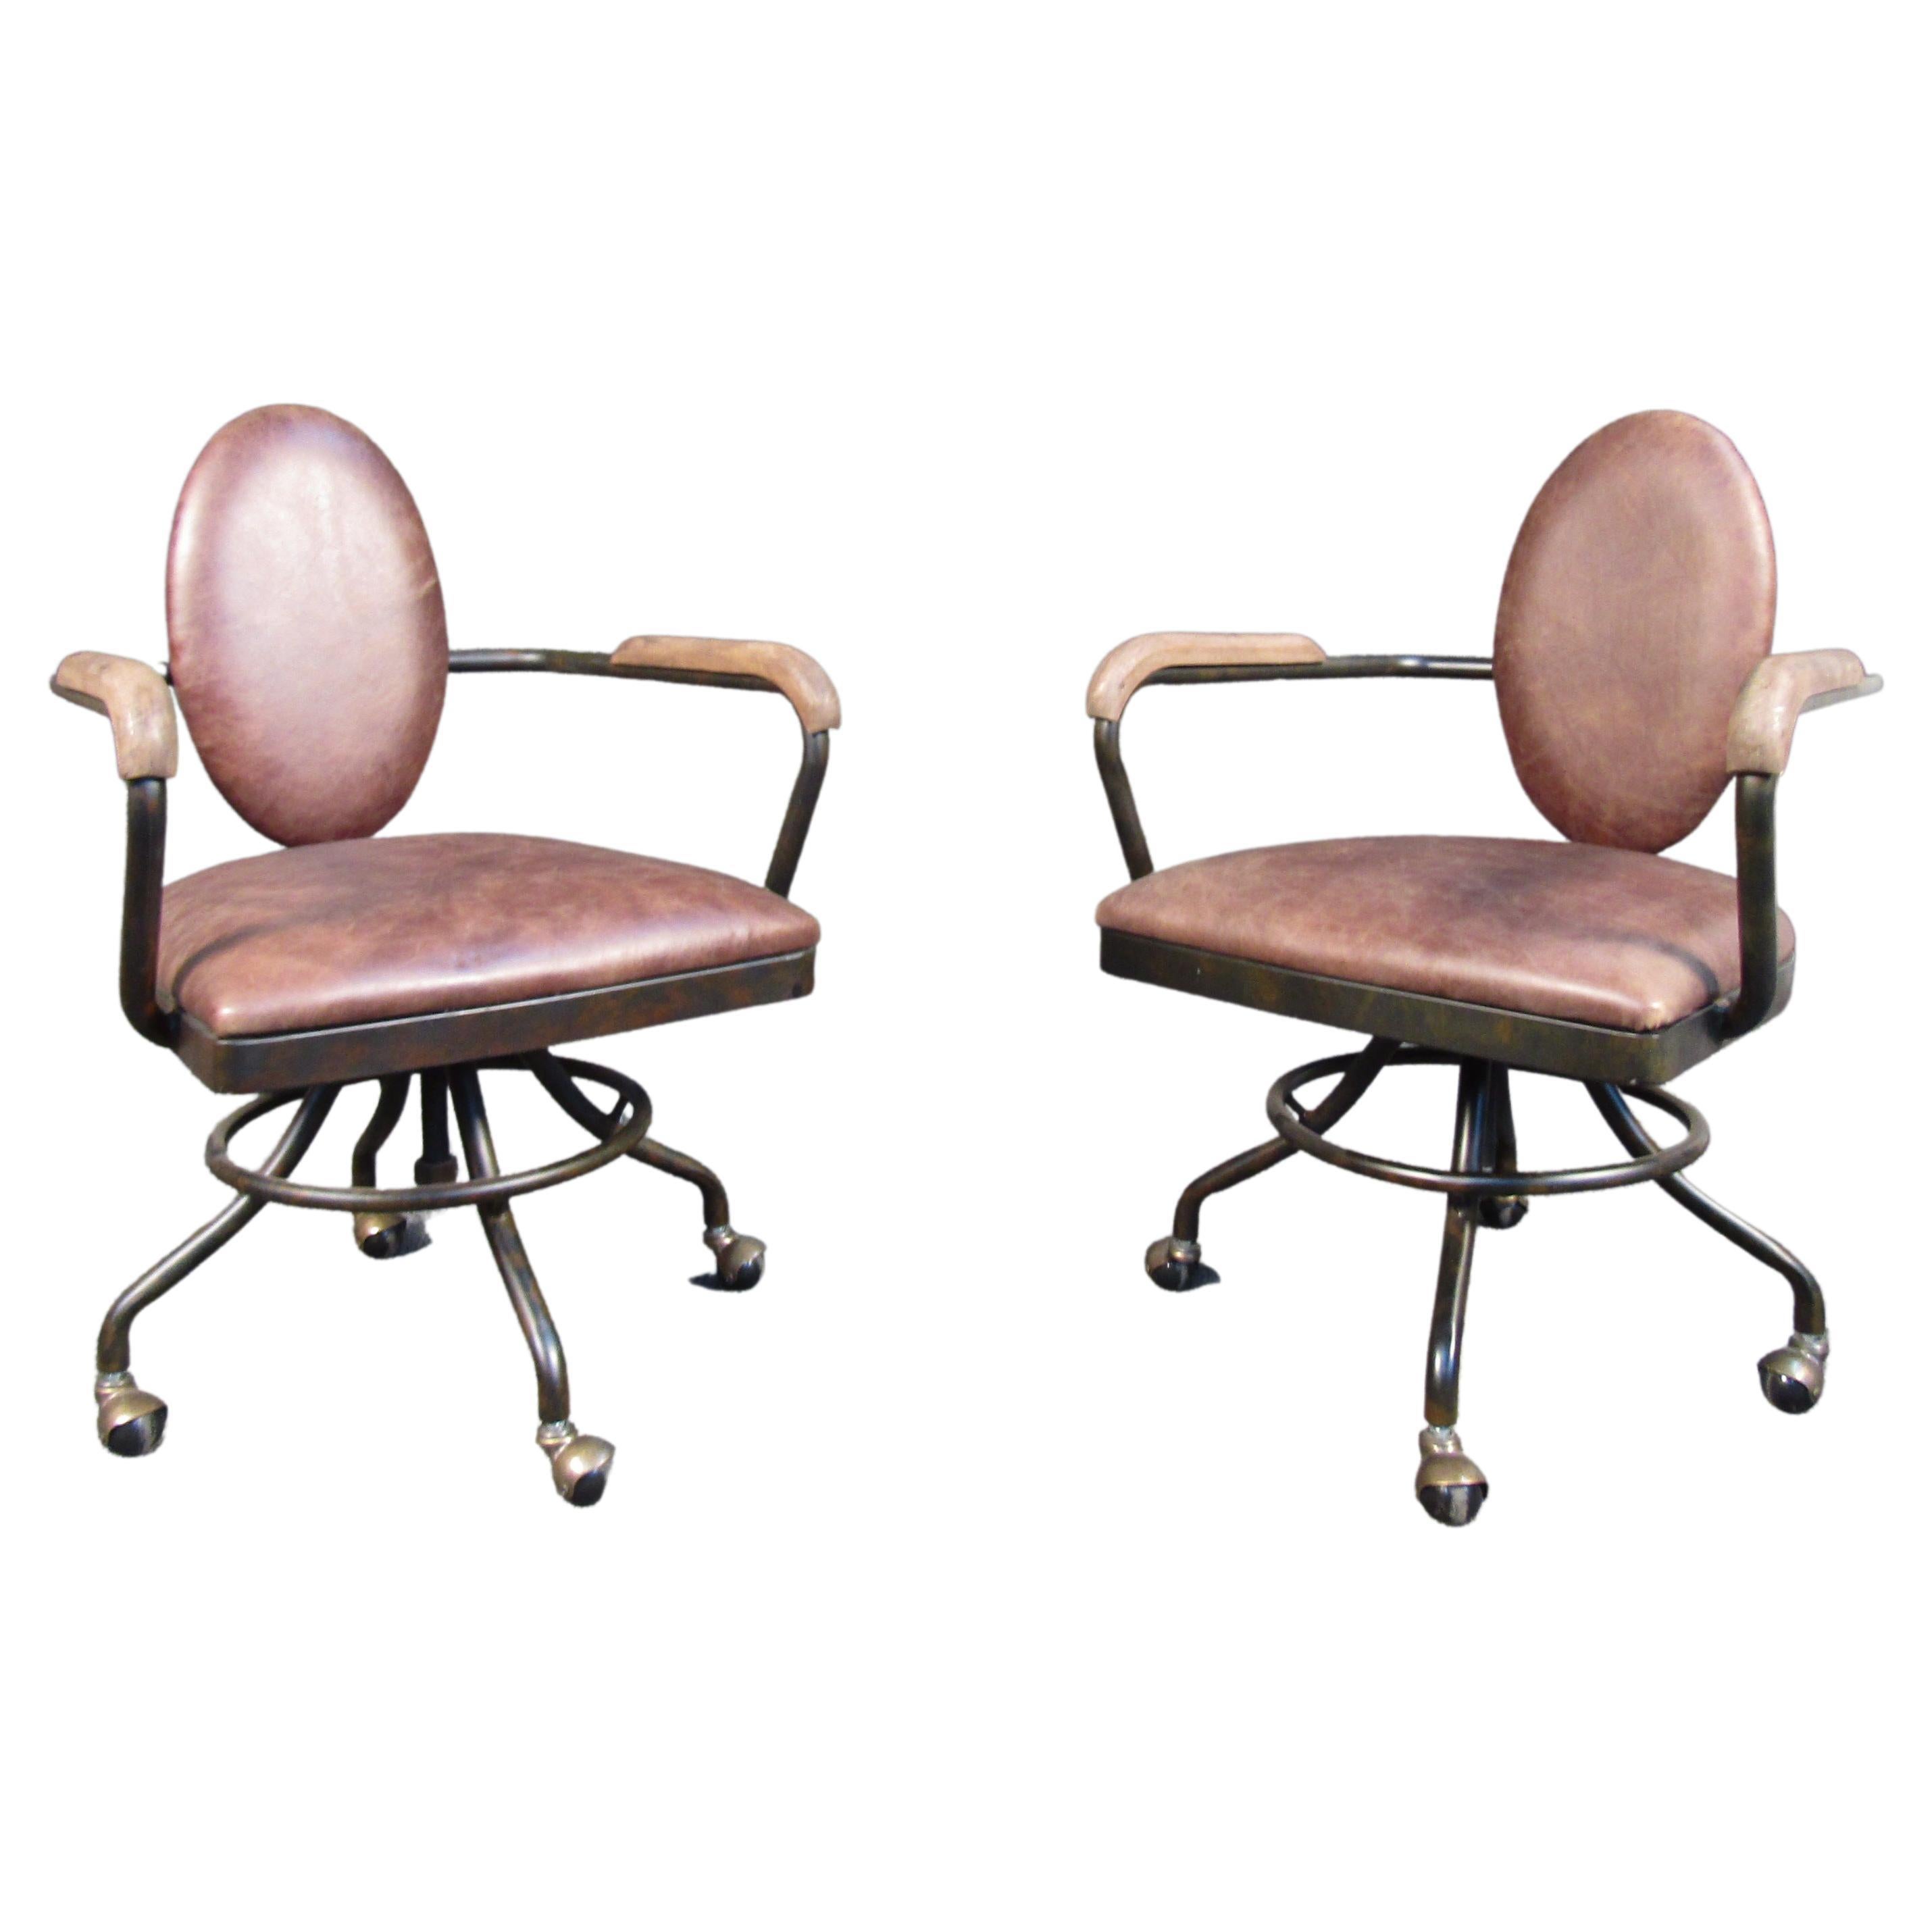 Chaises à rouleaux métallique et bois vintage